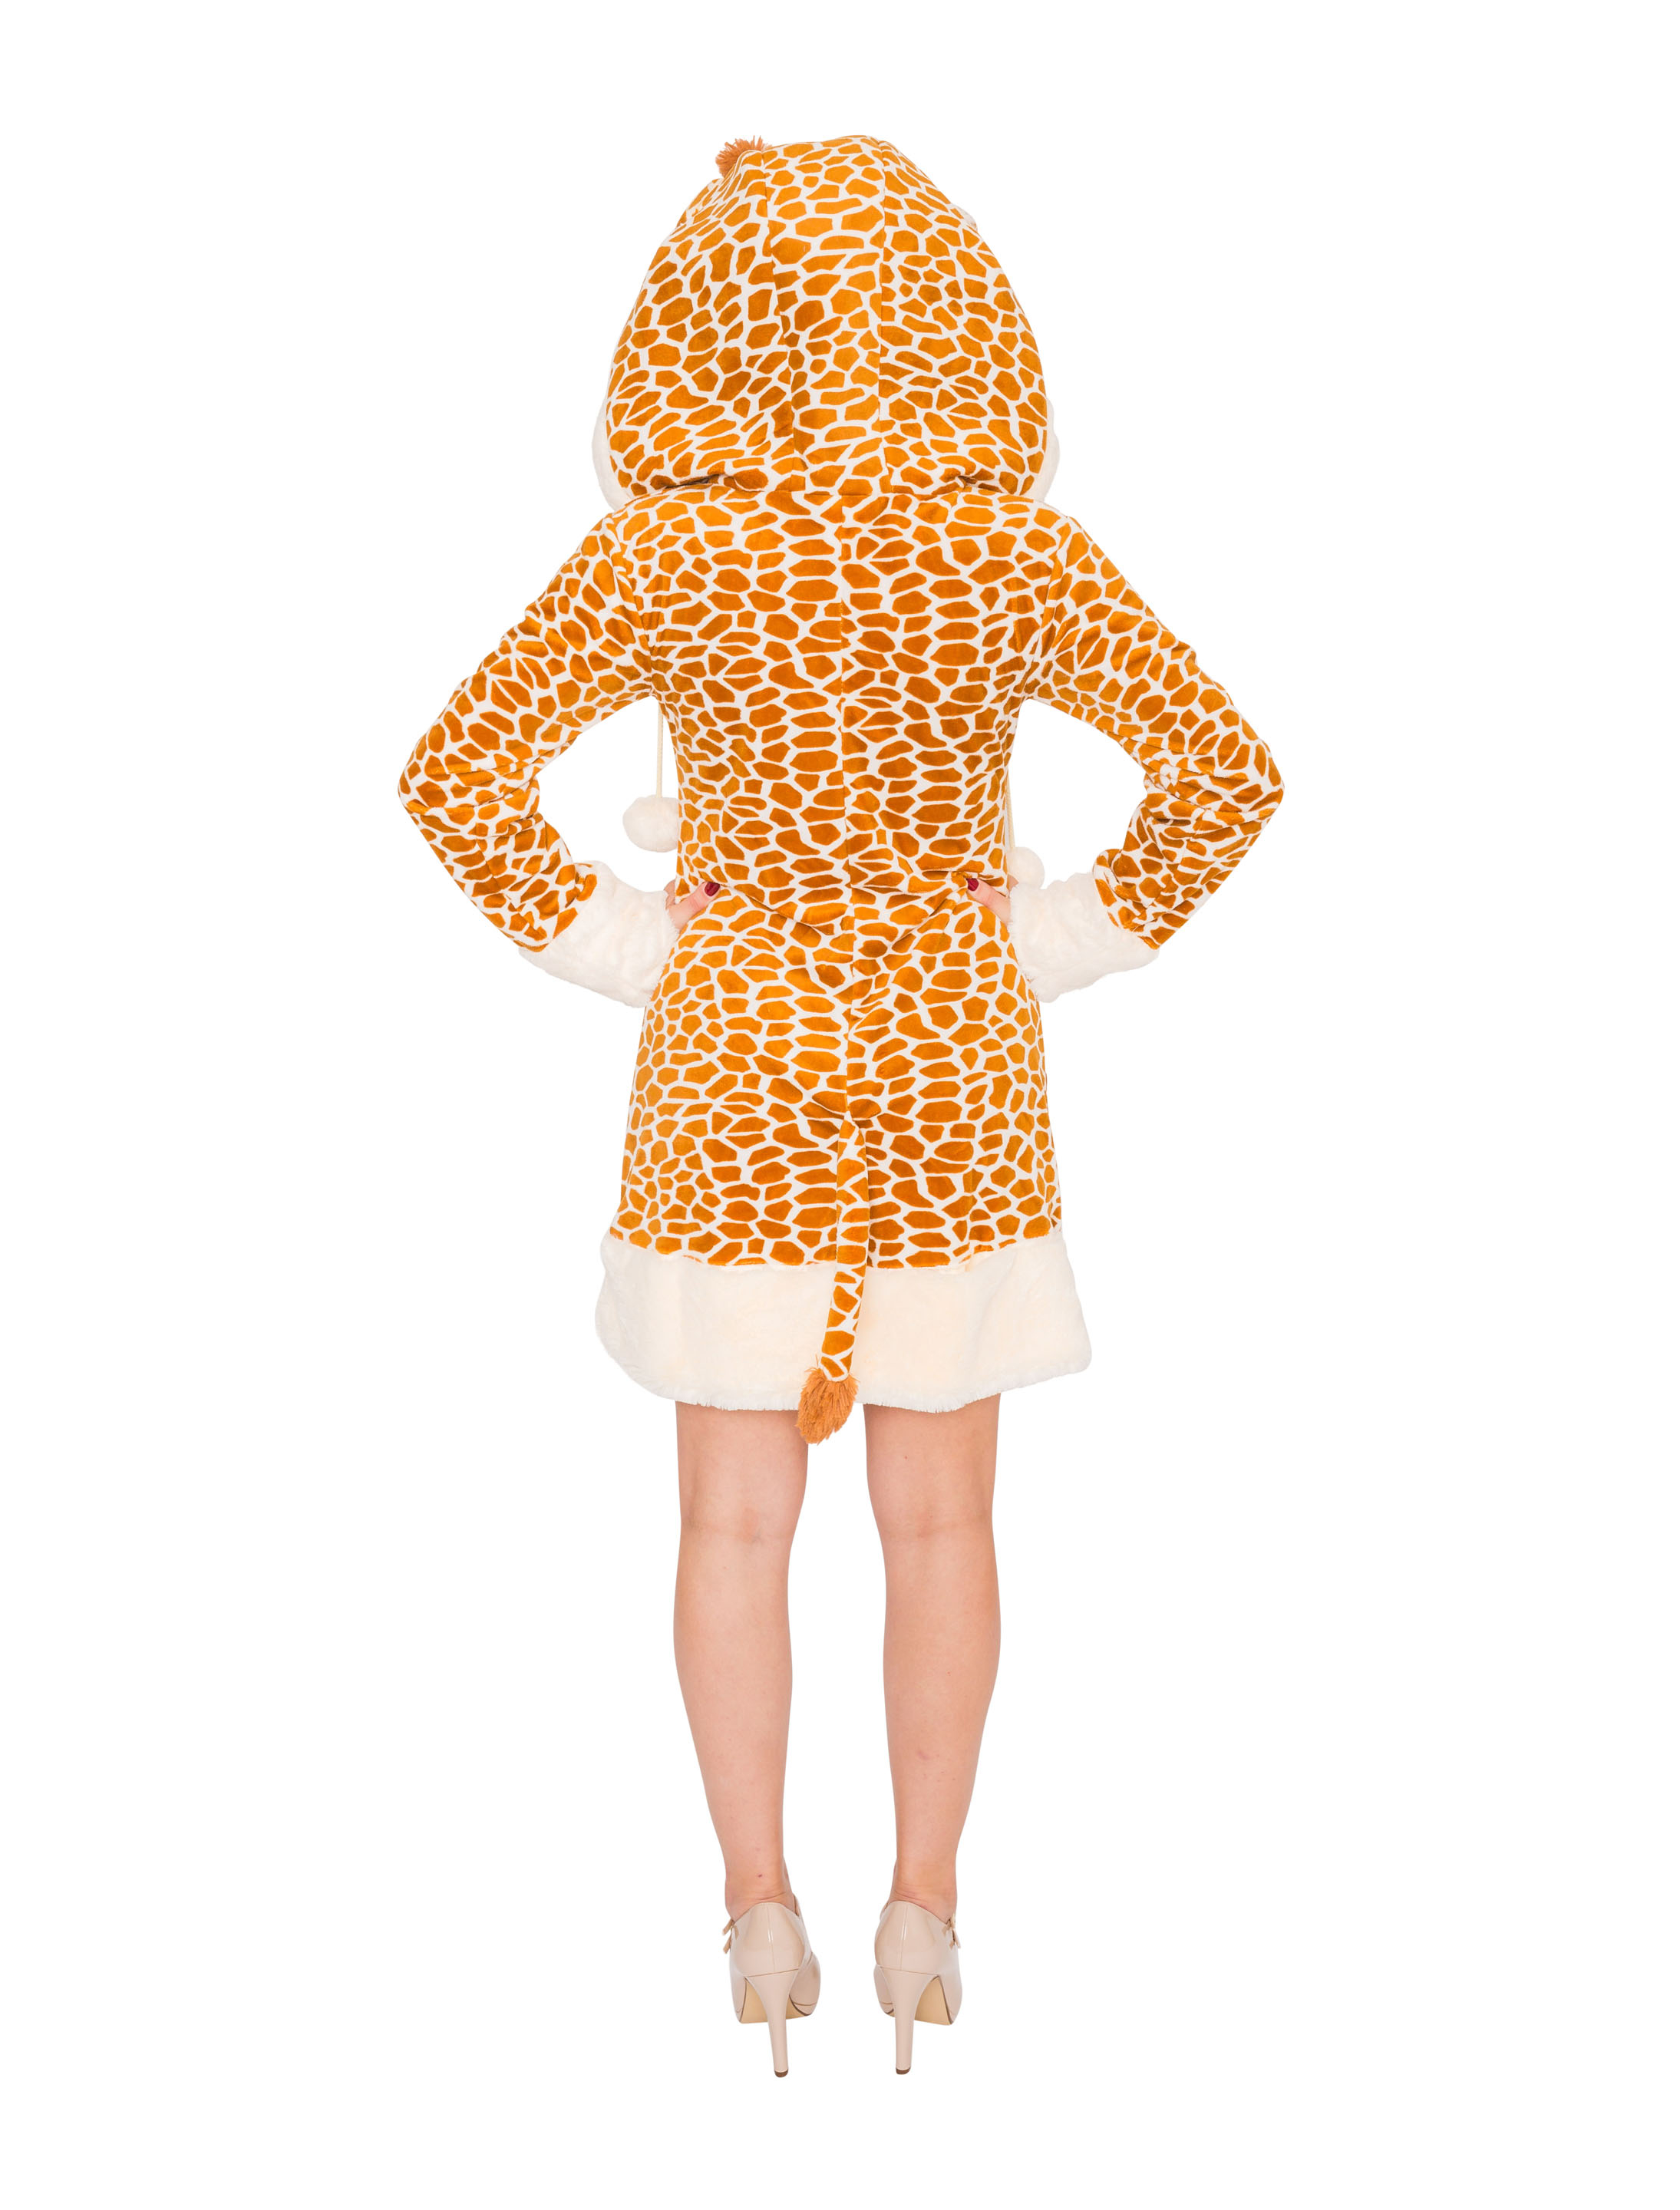 Kleid Plüsch Giraffe Damen braun 42-44